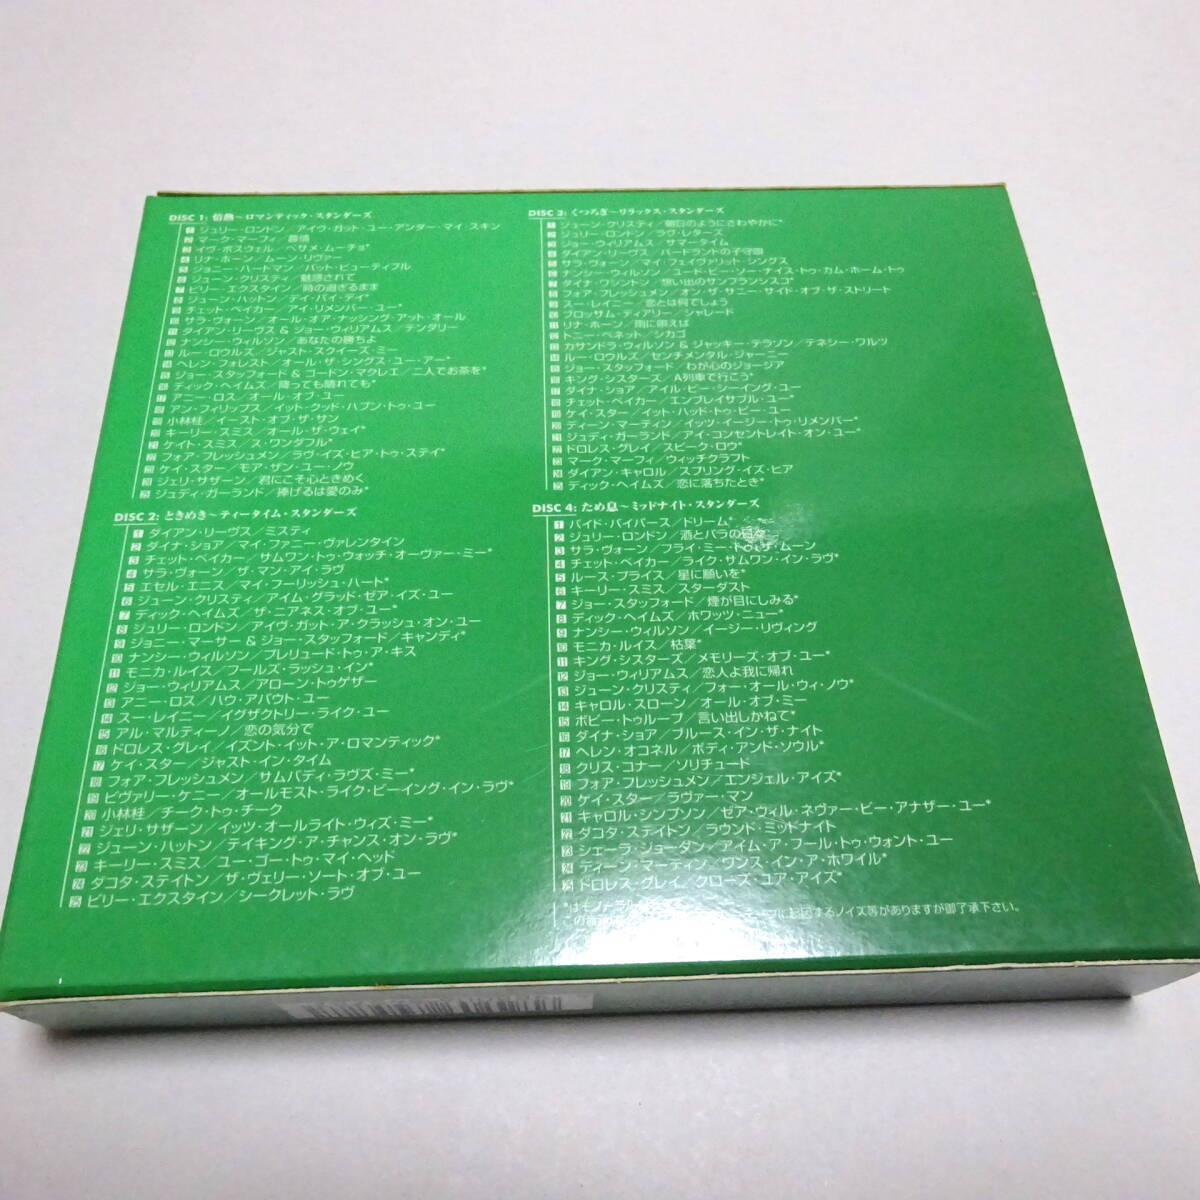 国内盤/4CD「ベスト・ジャズ・ヴォーカル100」サラ・ヴォーン/ジュリー・ロンドン/チェット・ベイカー/ジョニー・ハートマン 他の画像2